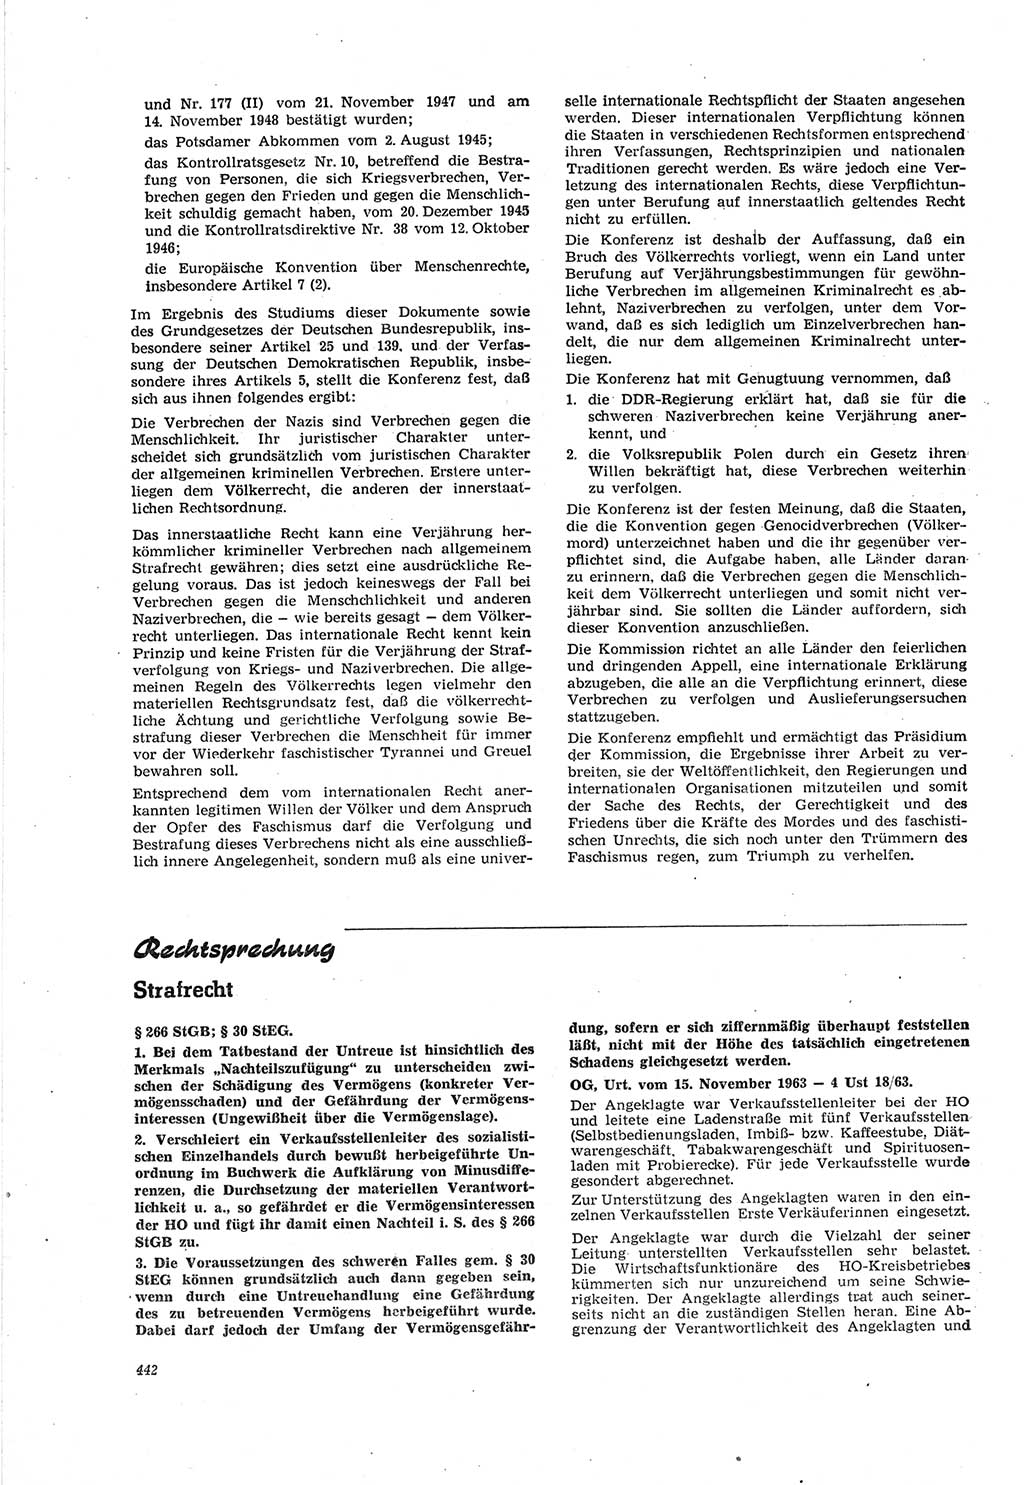 Neue Justiz (NJ), Zeitschrift für Recht und Rechtswissenschaft [Deutsche Demokratische Republik (DDR)], 18. Jahrgang 1964, Seite 442 (NJ DDR 1964, S. 442)